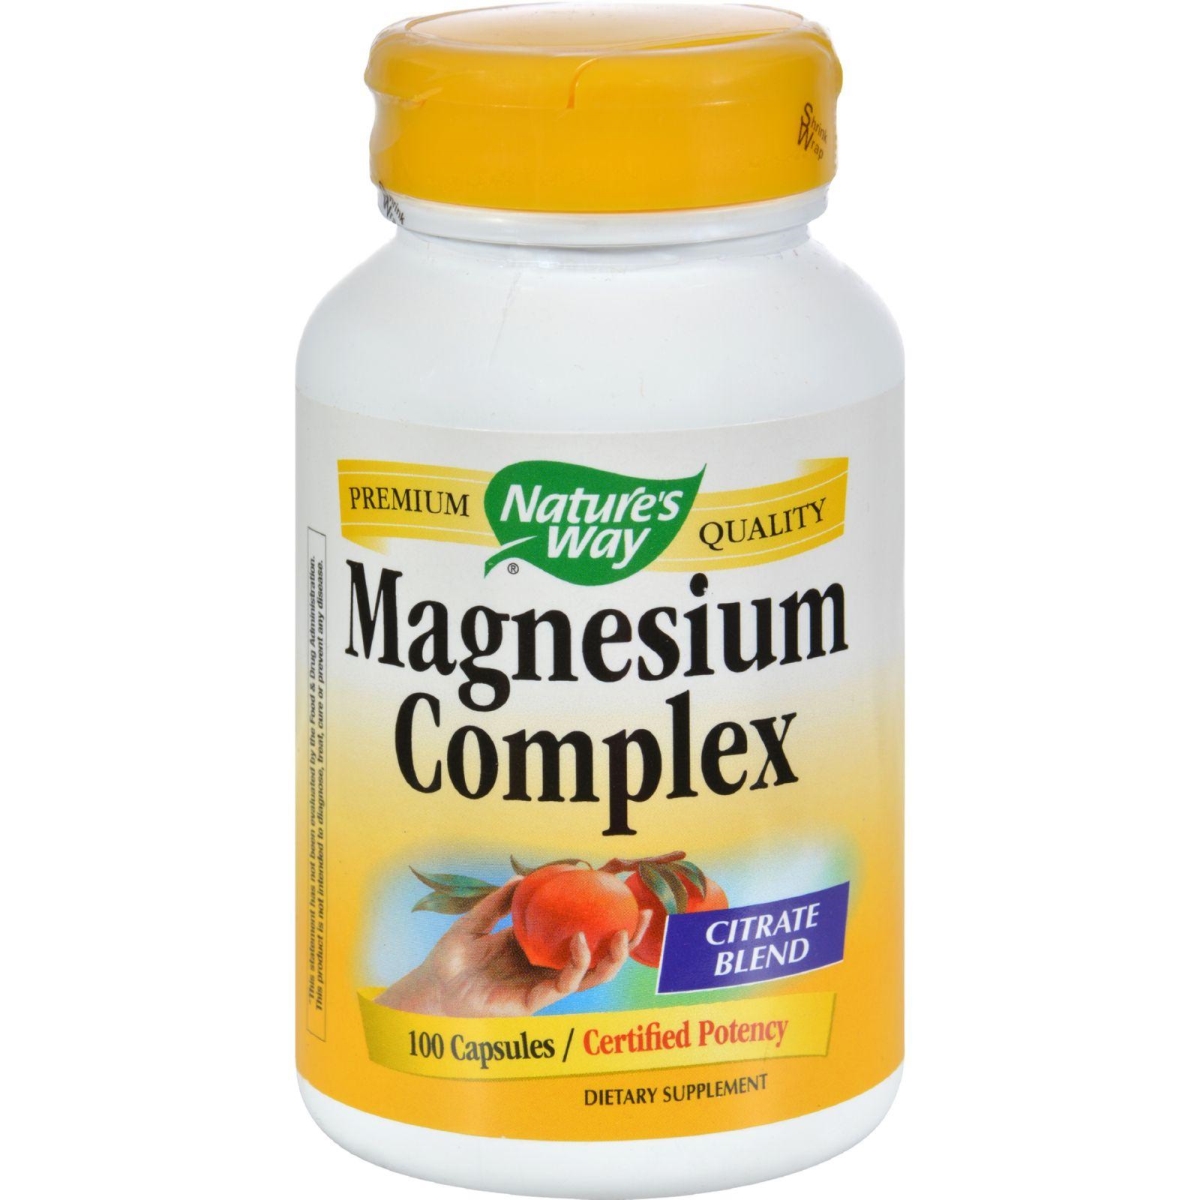 Hg0816363 Magnesium Complex - 100 Capsules